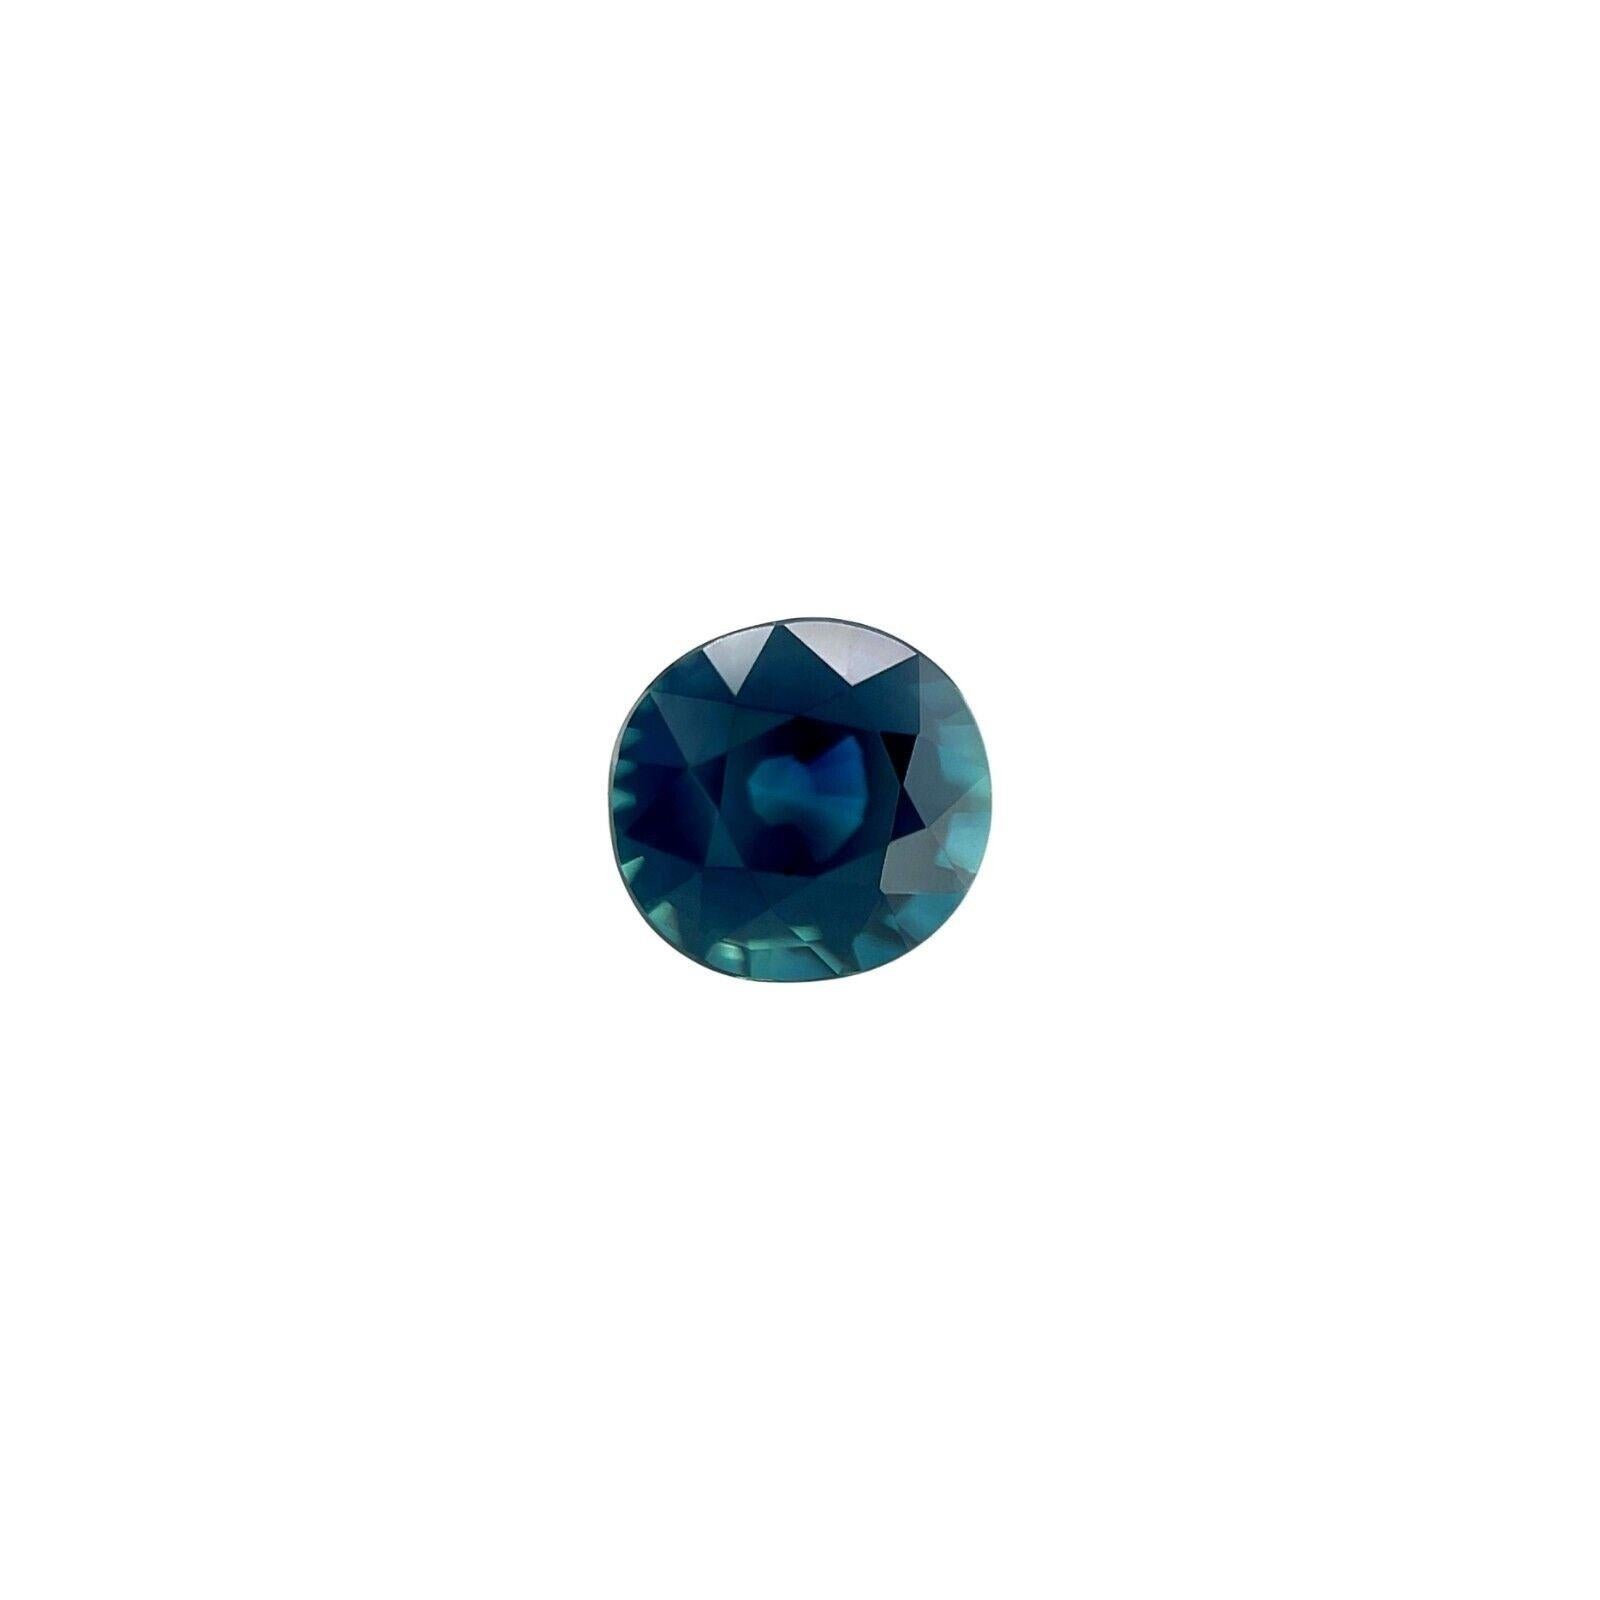 IGI Certified 1.11Ct Natural Teal Blue Sapphire Untreated Unheated Rare Gem

Saphir naturel bleu sarcelle foncé non traité certifié IGI.
Pierre de 1,11 carat d'une belle couleur bleu sarcelle et d'une très belle taille ronde mixte.
Il présente